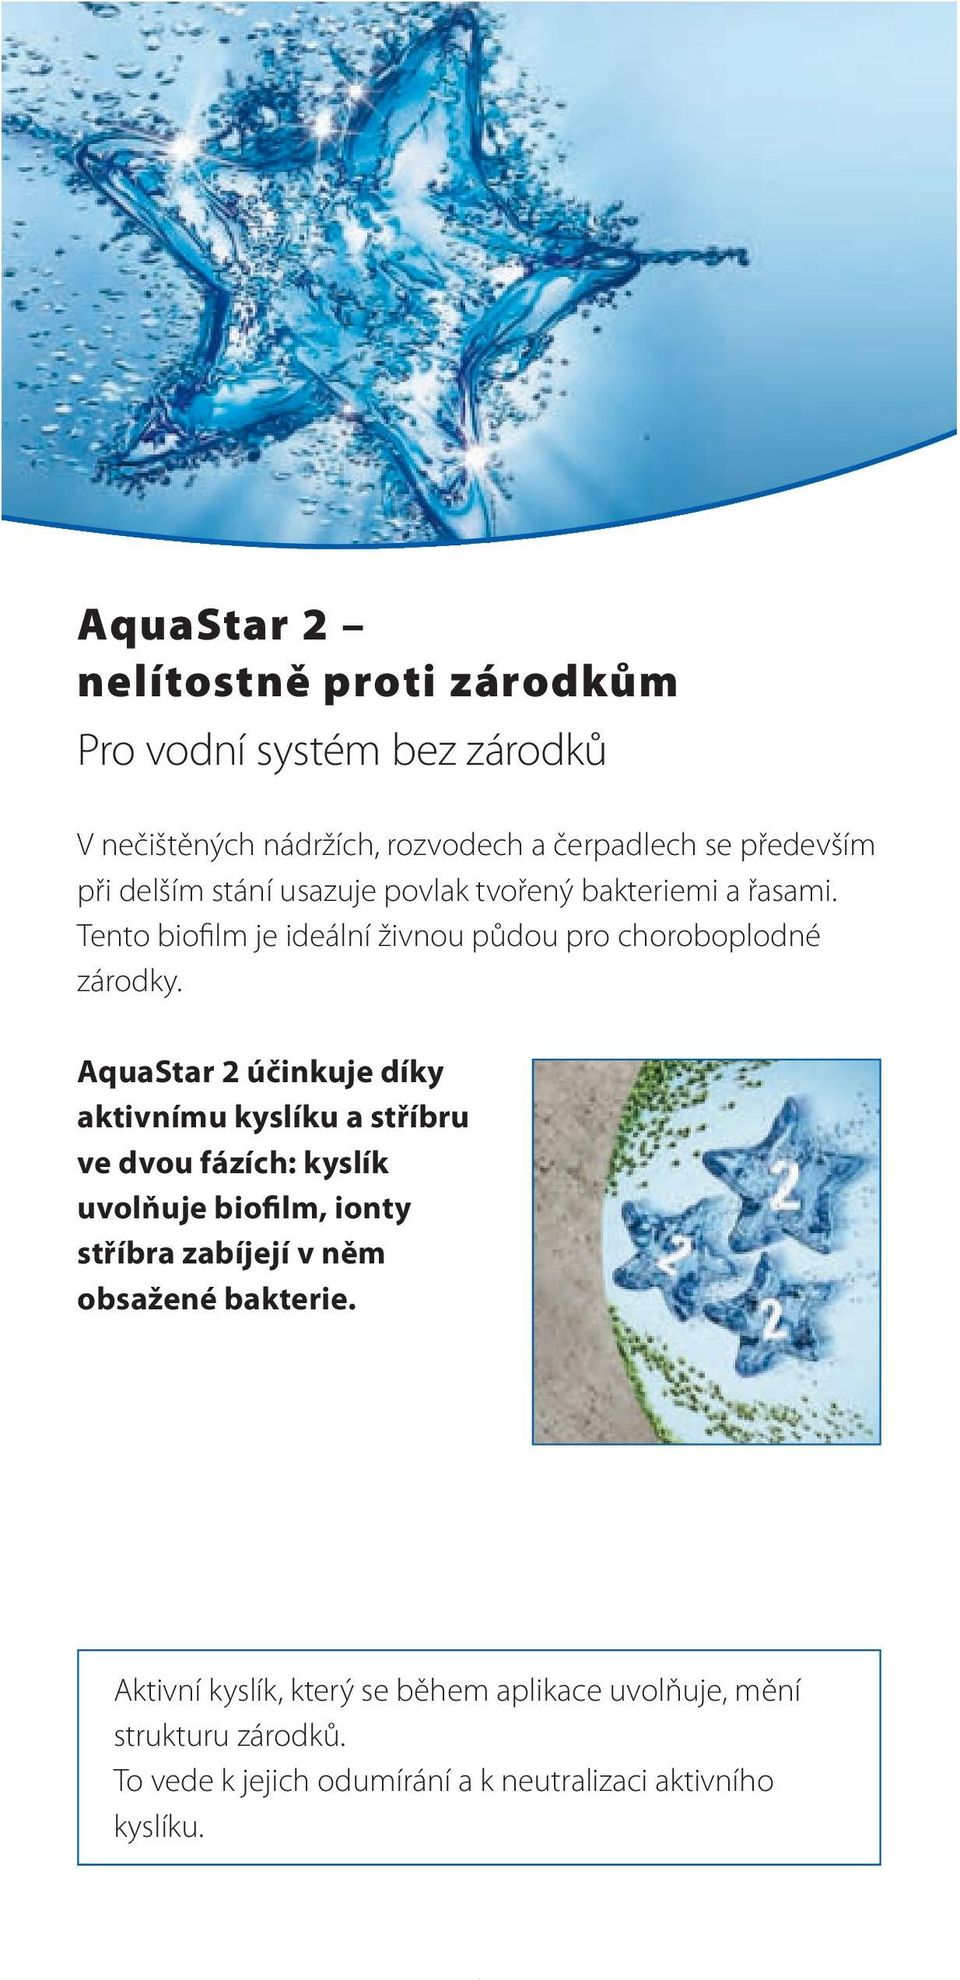 AquaStar 2 účinkuje díky aktivnímu kyslíku a stříbru ve dvou fázích: kyslík uvolňuje biofilm, ionty stříbra zabíjejí v něm obsažené